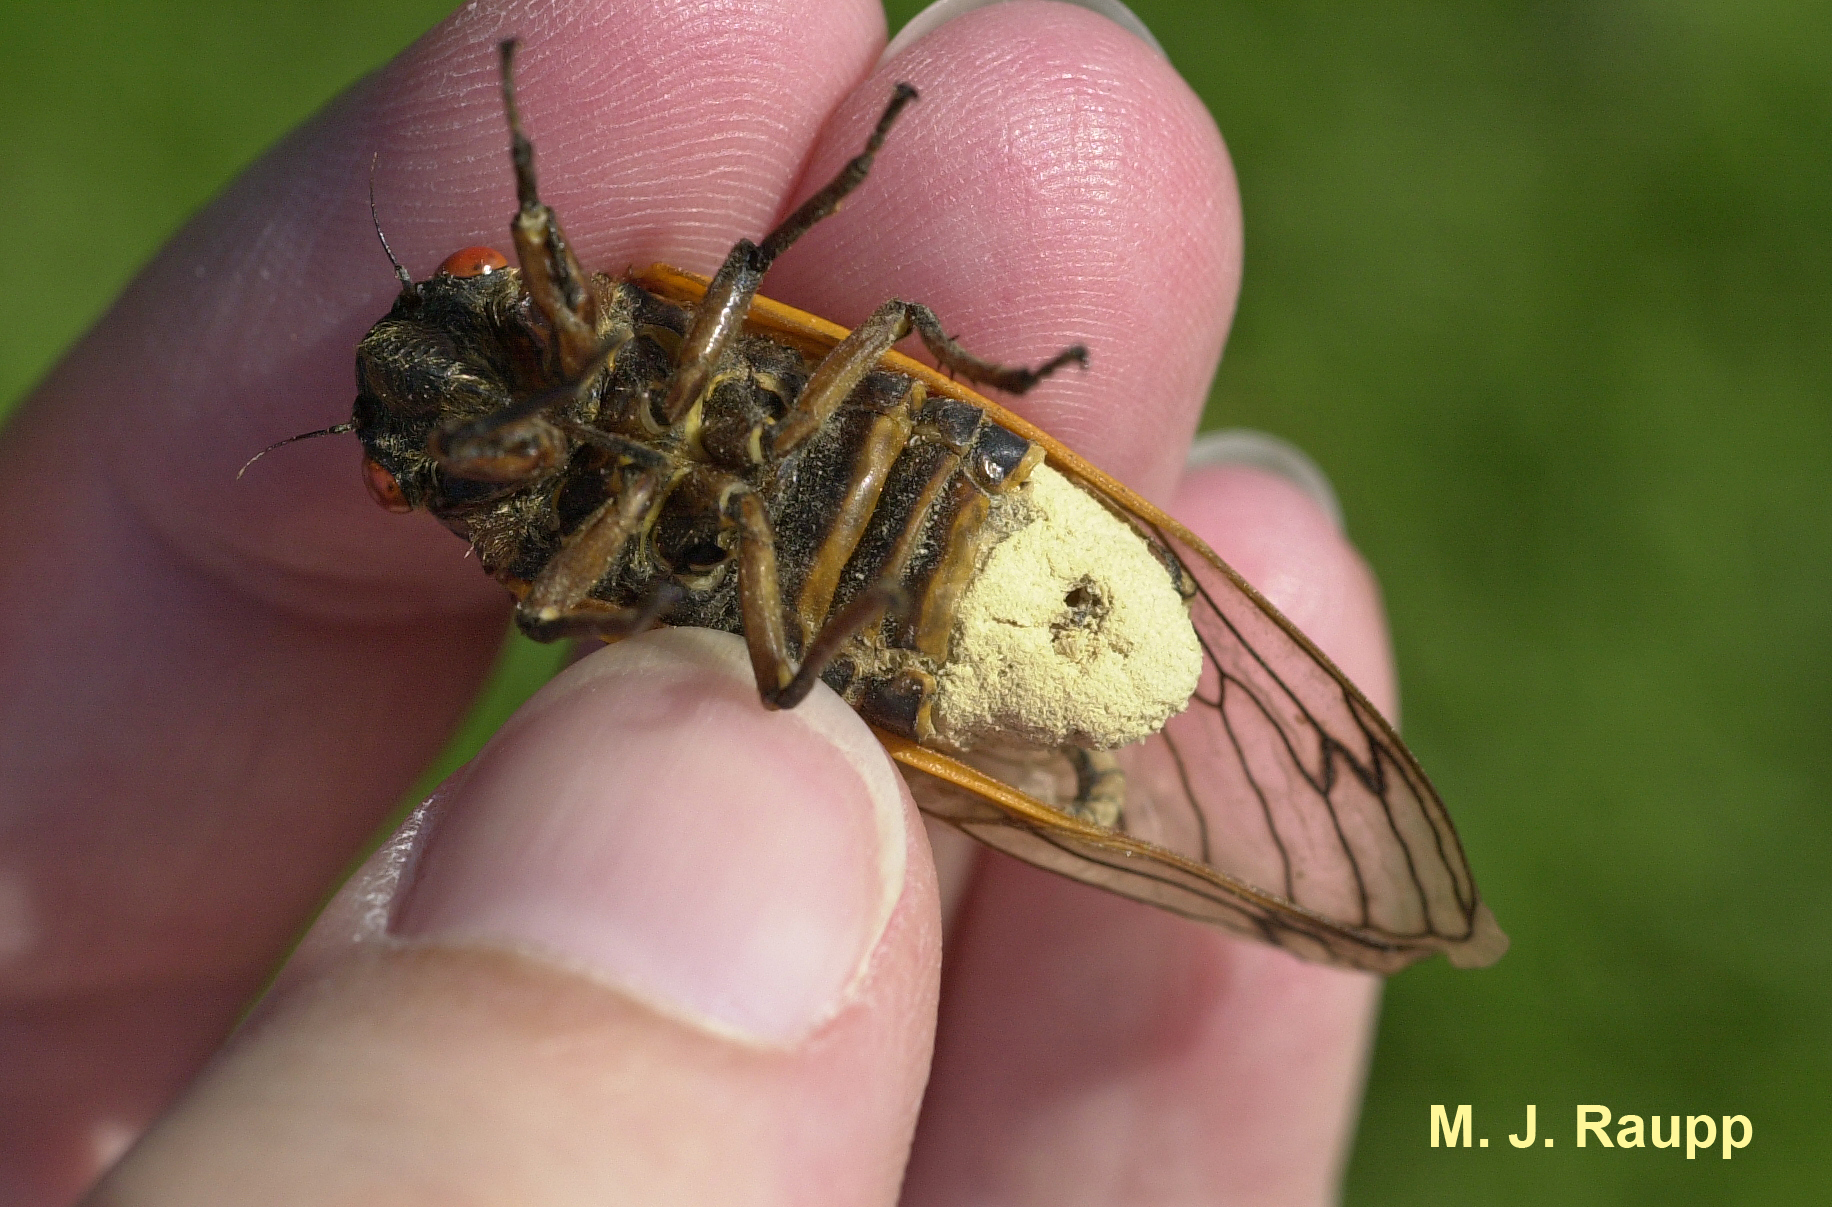 Massospora turns the cicada into a fungus garden.